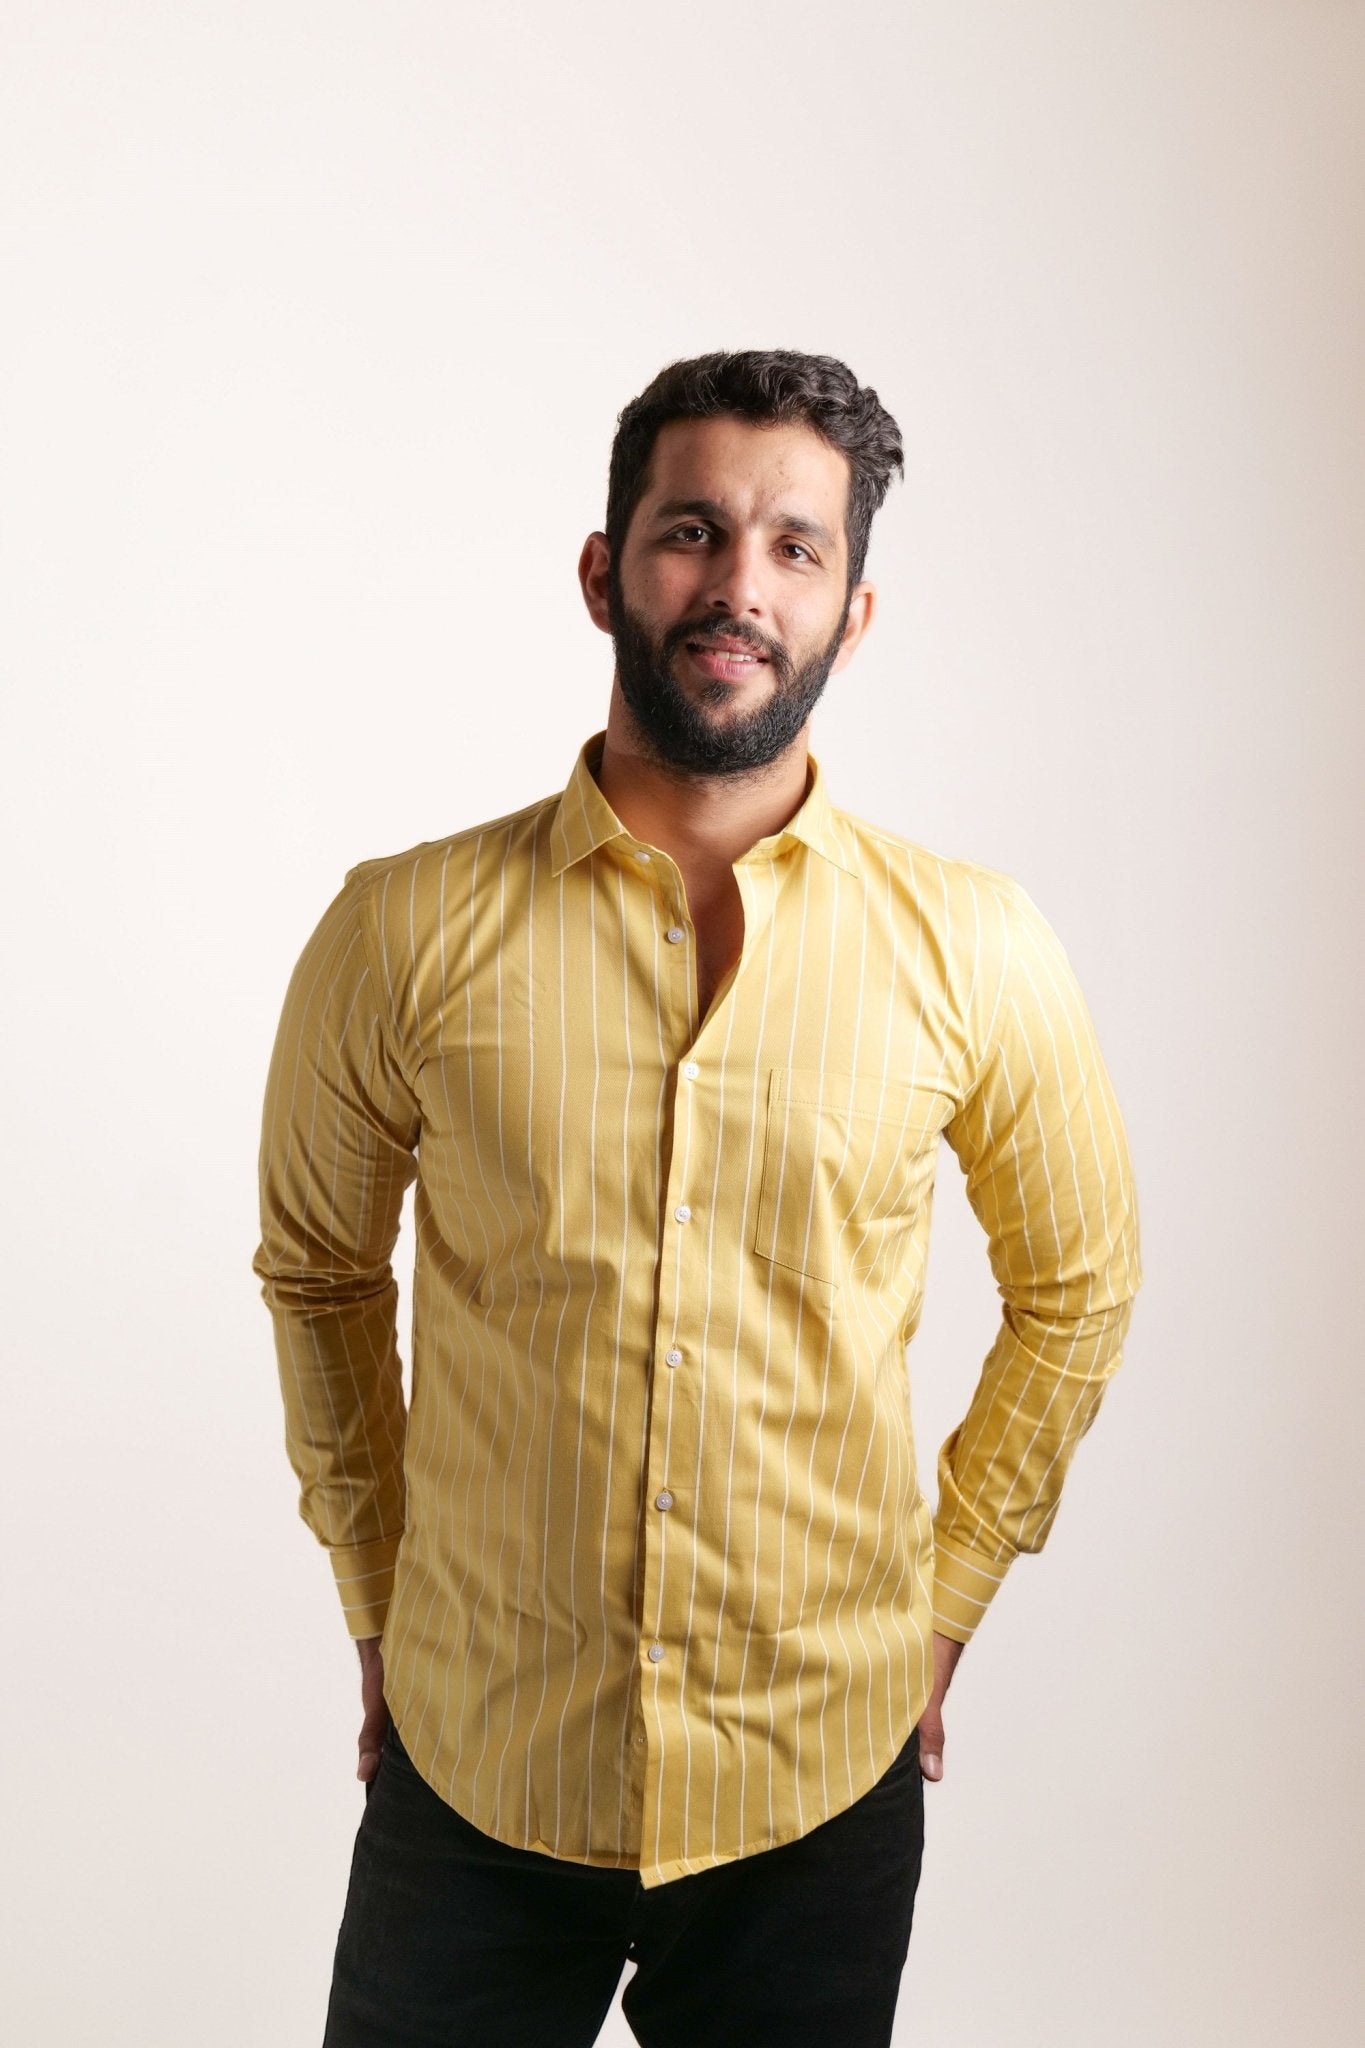 Yellow Color Pure Cotton Lining Shirt For Men - Punekar Cotton